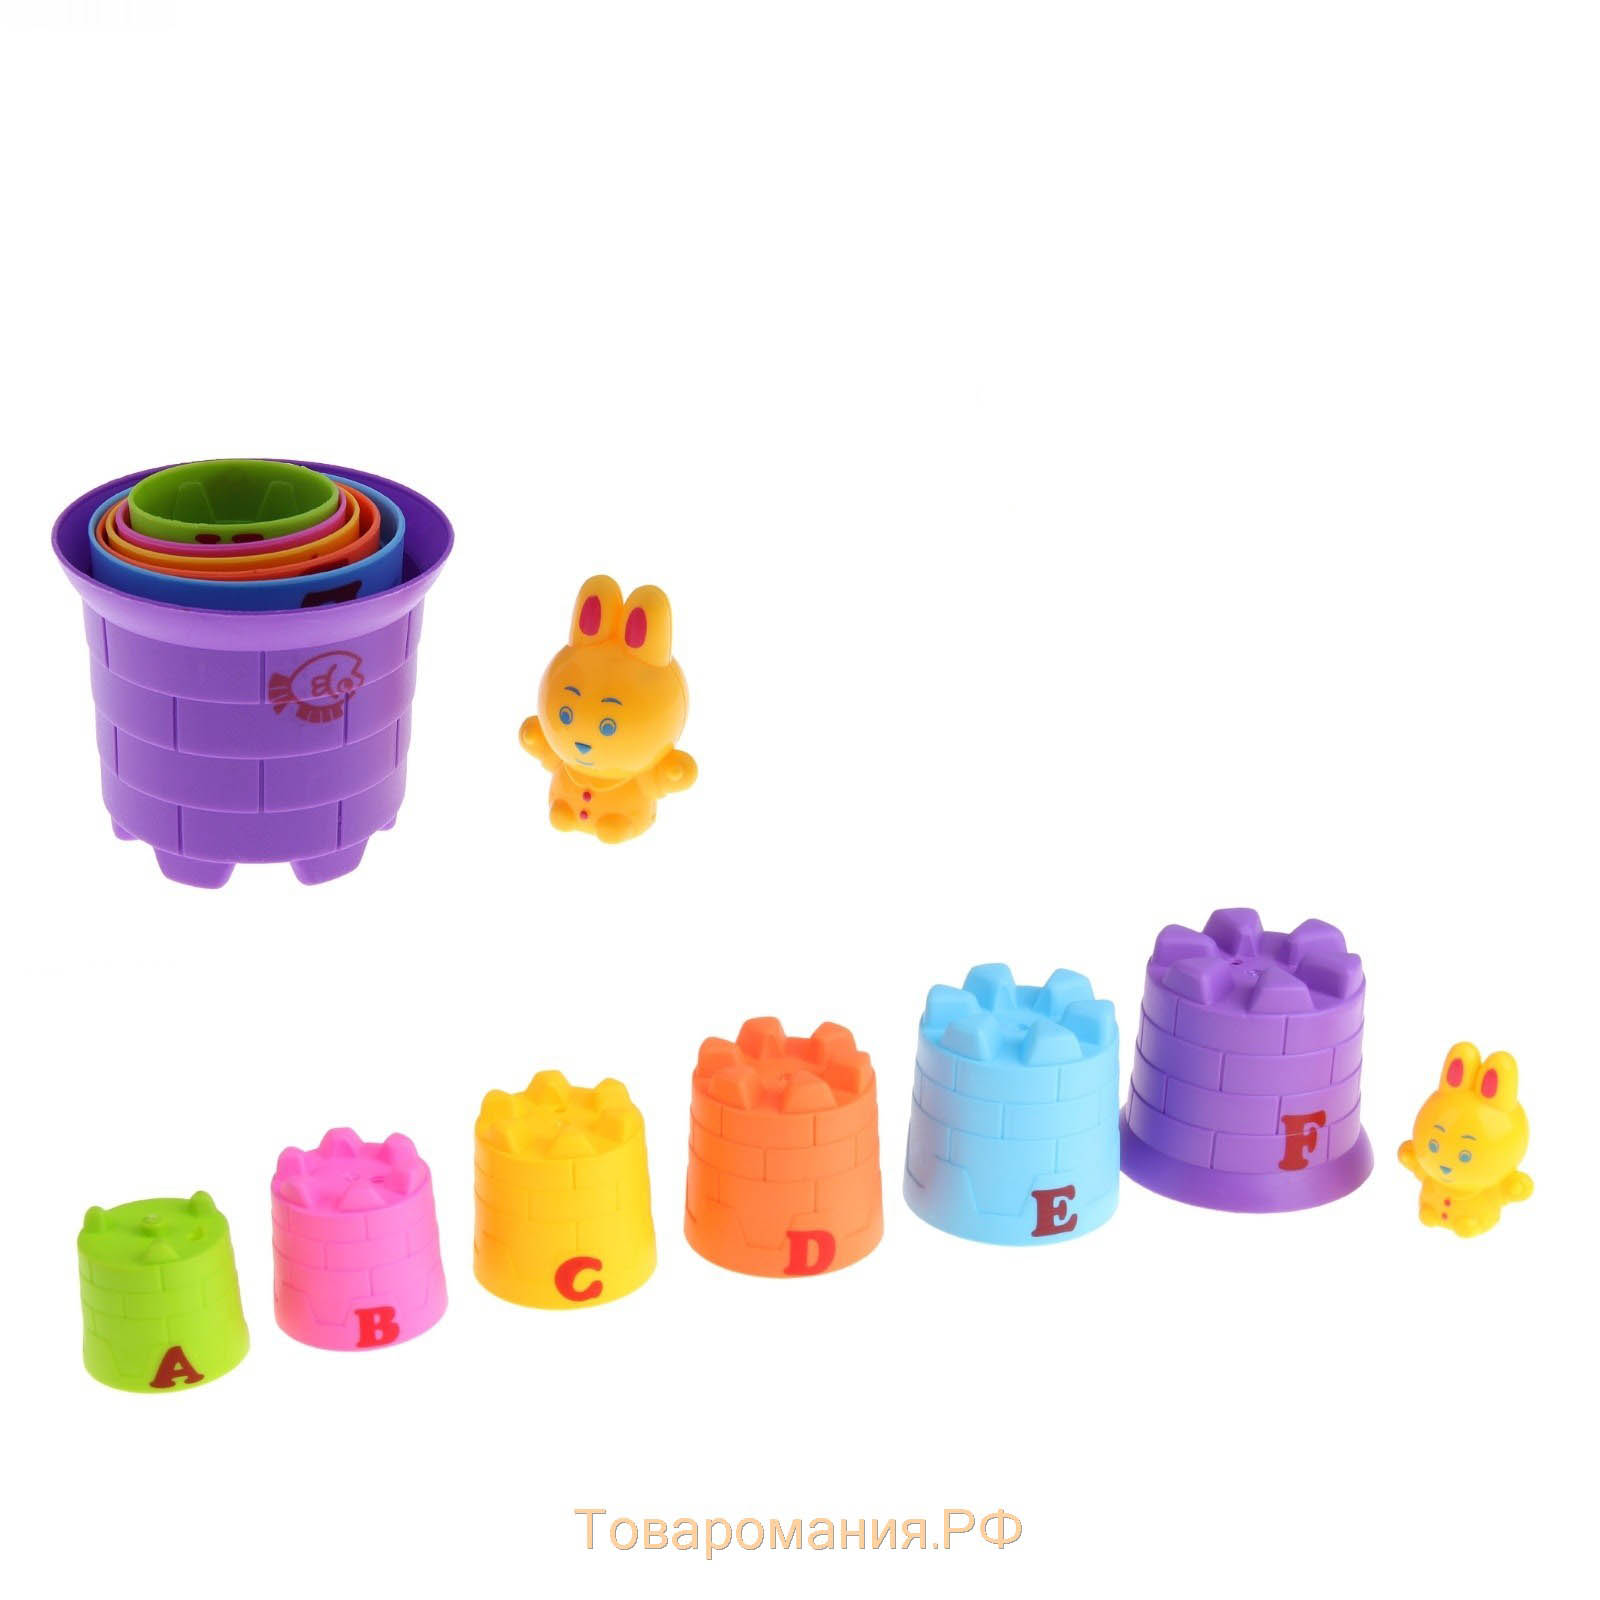 Игровой набор «Пирамида»: 6 стаканчиков, 1 игрушка (зайчик/мишка), МИКС